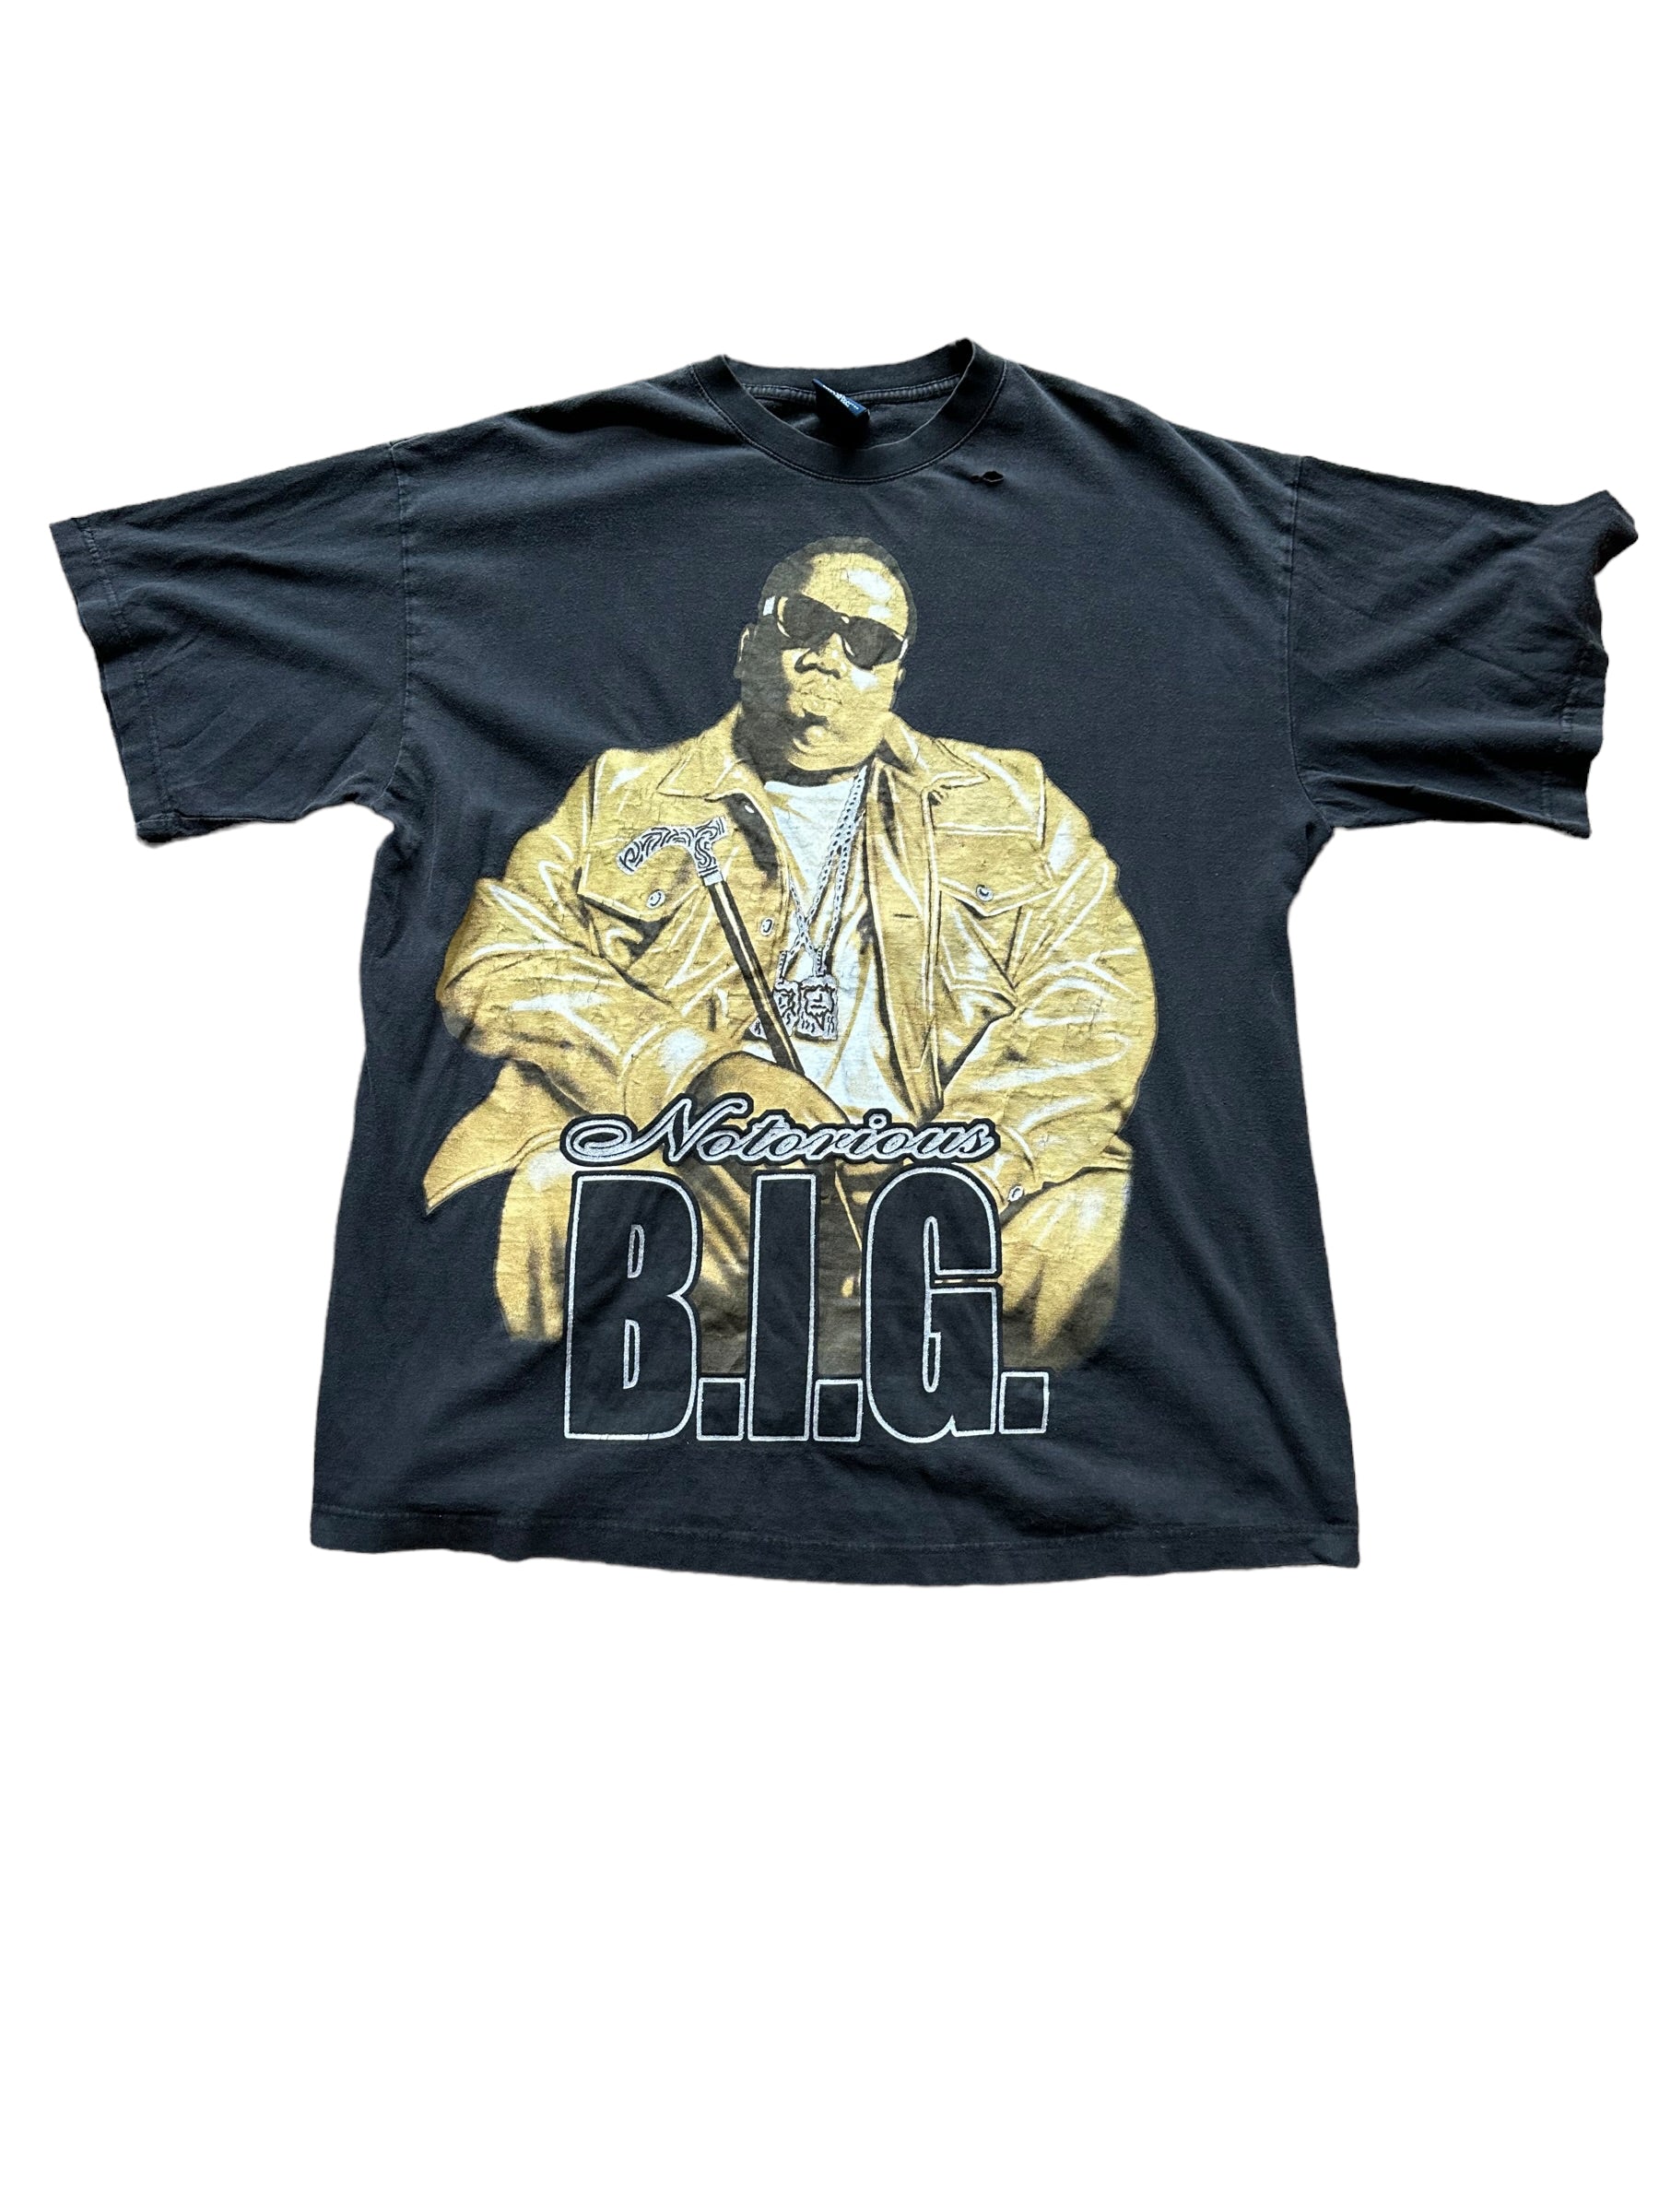 The Notorious B.I.G. Biggie Smalls Graphic Rap Tee Black T-Shirt Brooklyn  Mint